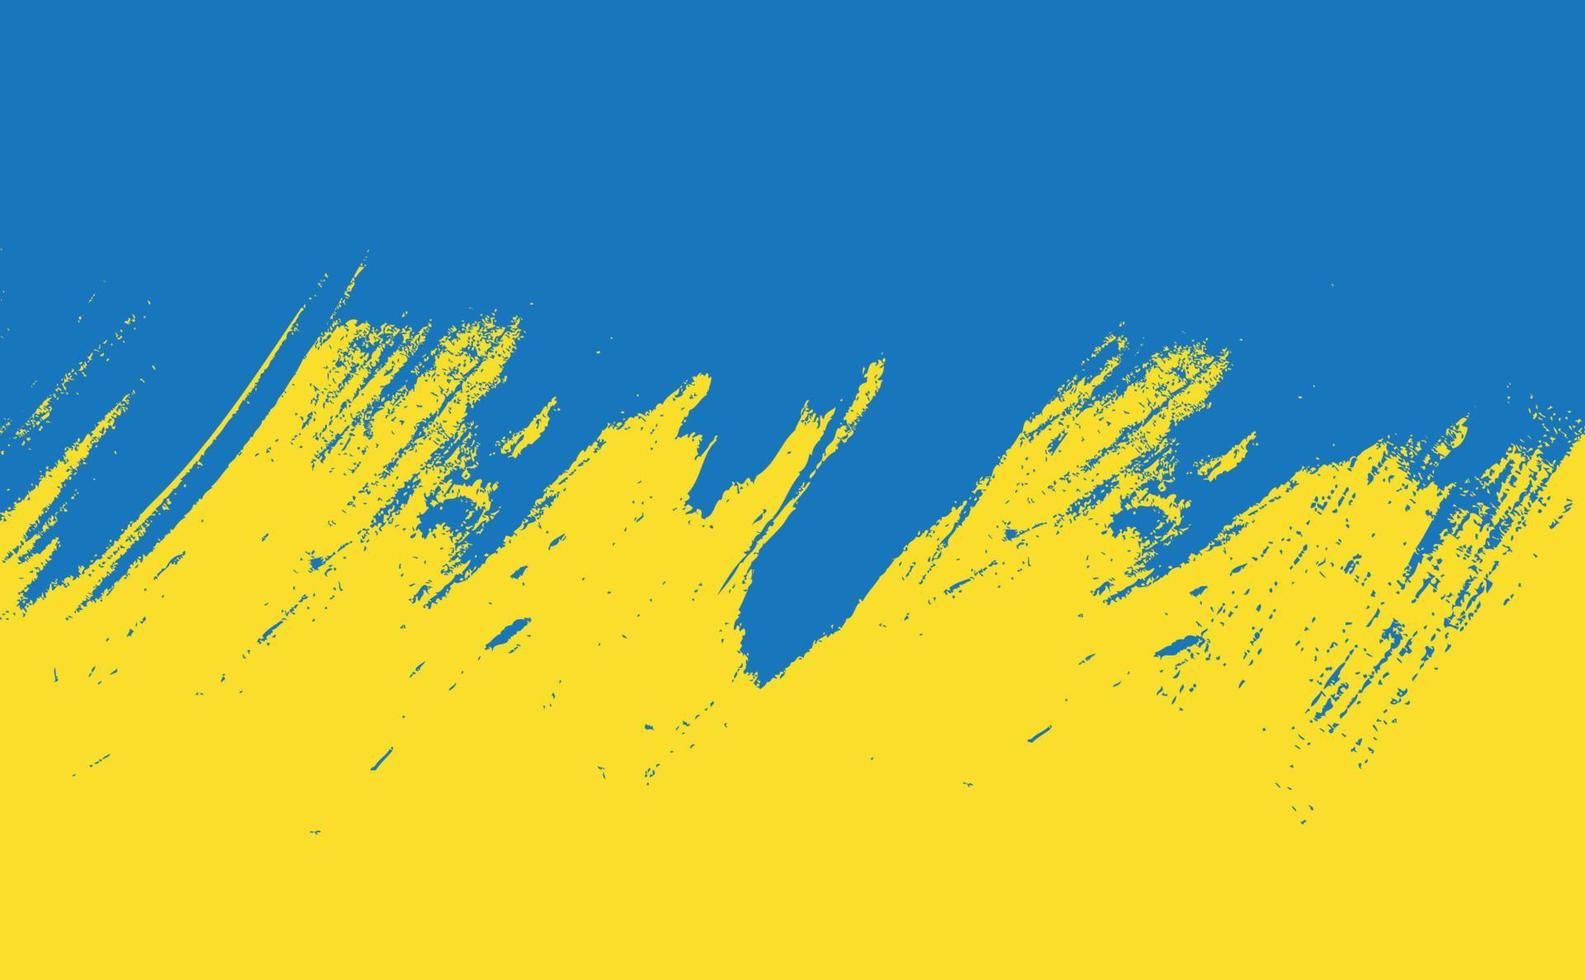 abstrakt gul och blå grunge textur, akvarell penseldrag. Ukrainas flagga. bakgrund. vektor